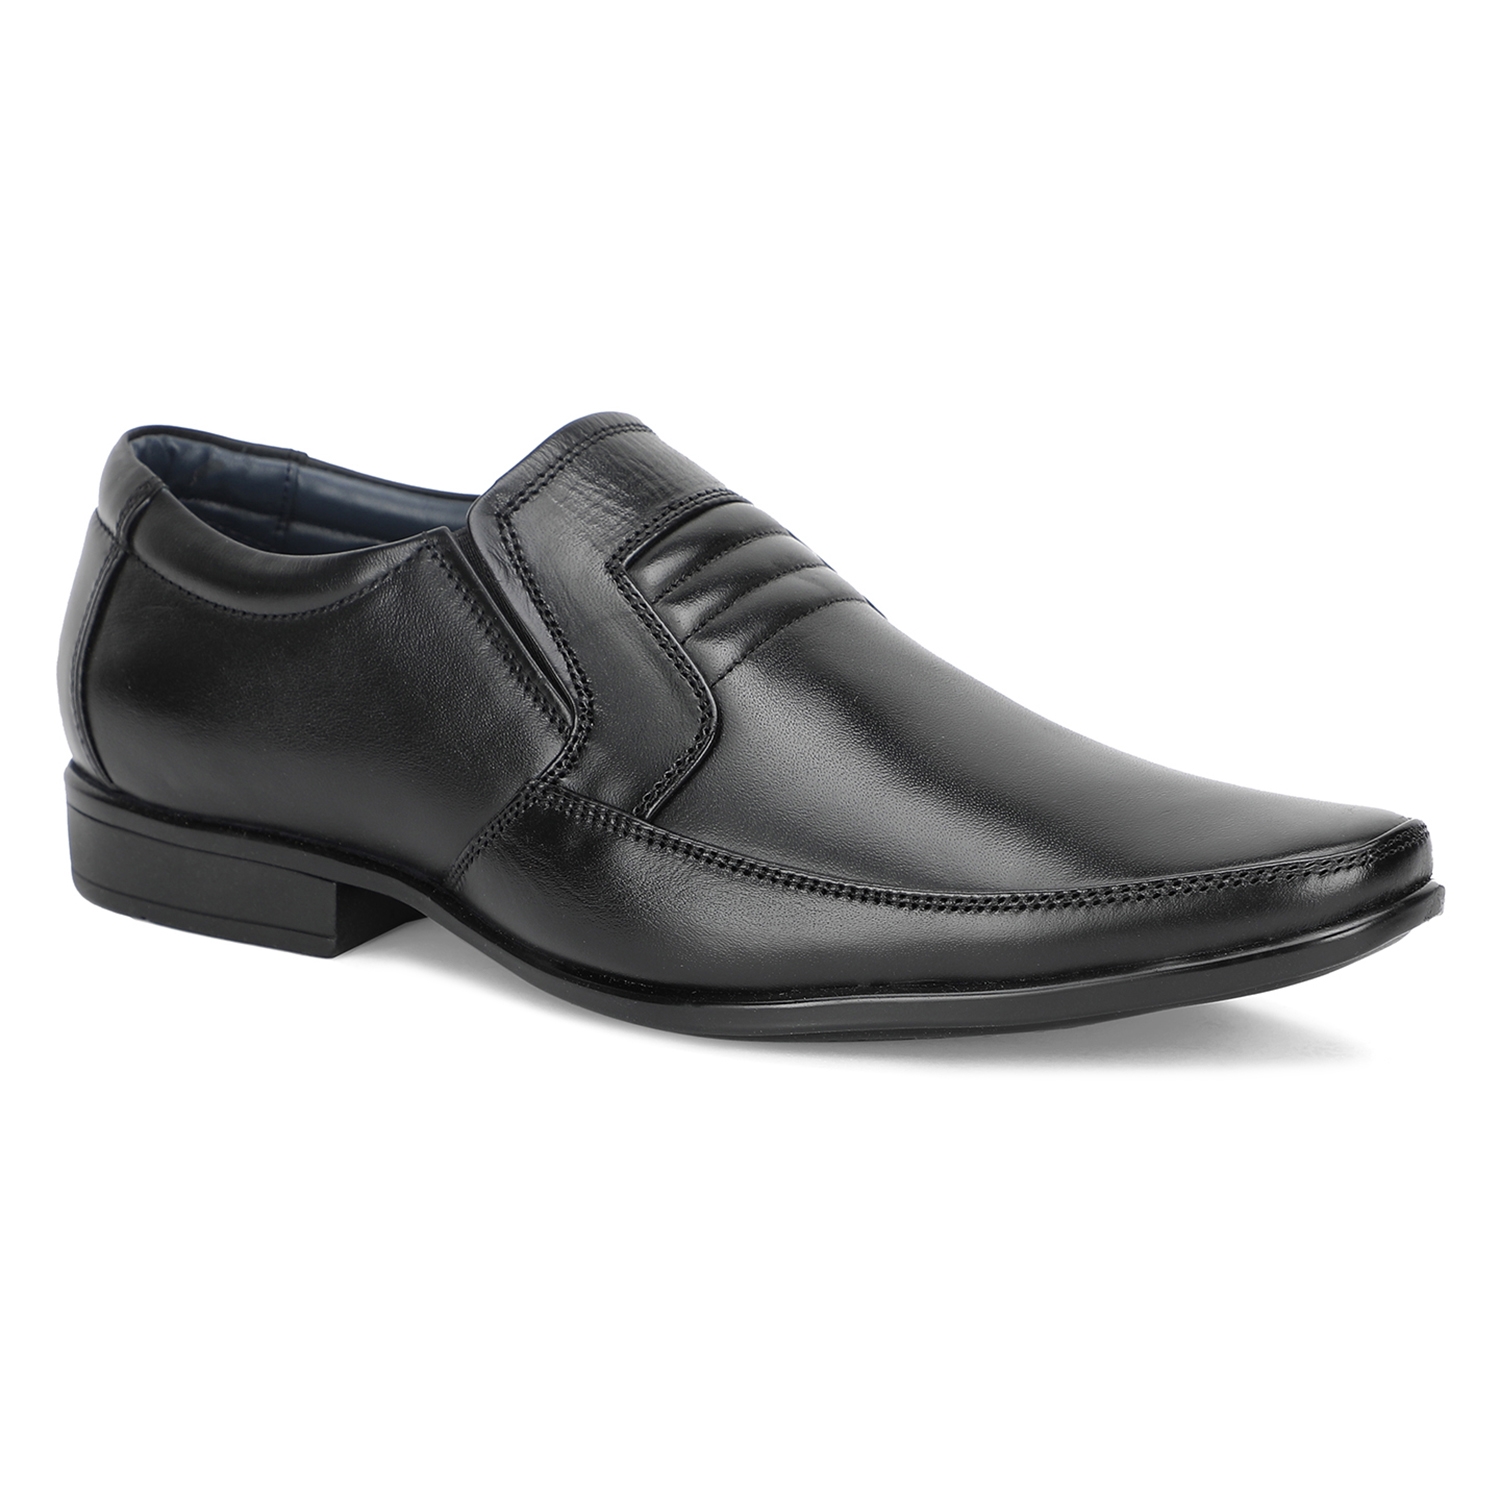 Khadim | Khadim Black Leather Slip On Formal Shoe for Men